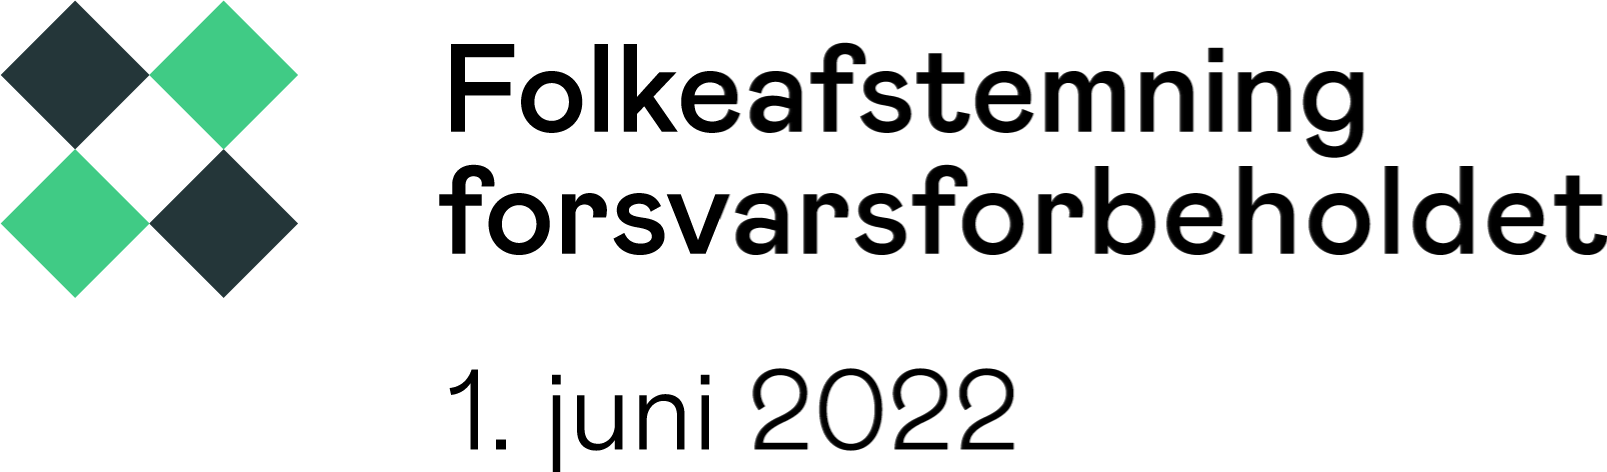 Logo for folkeafstemning om forsvarsforbeholdet